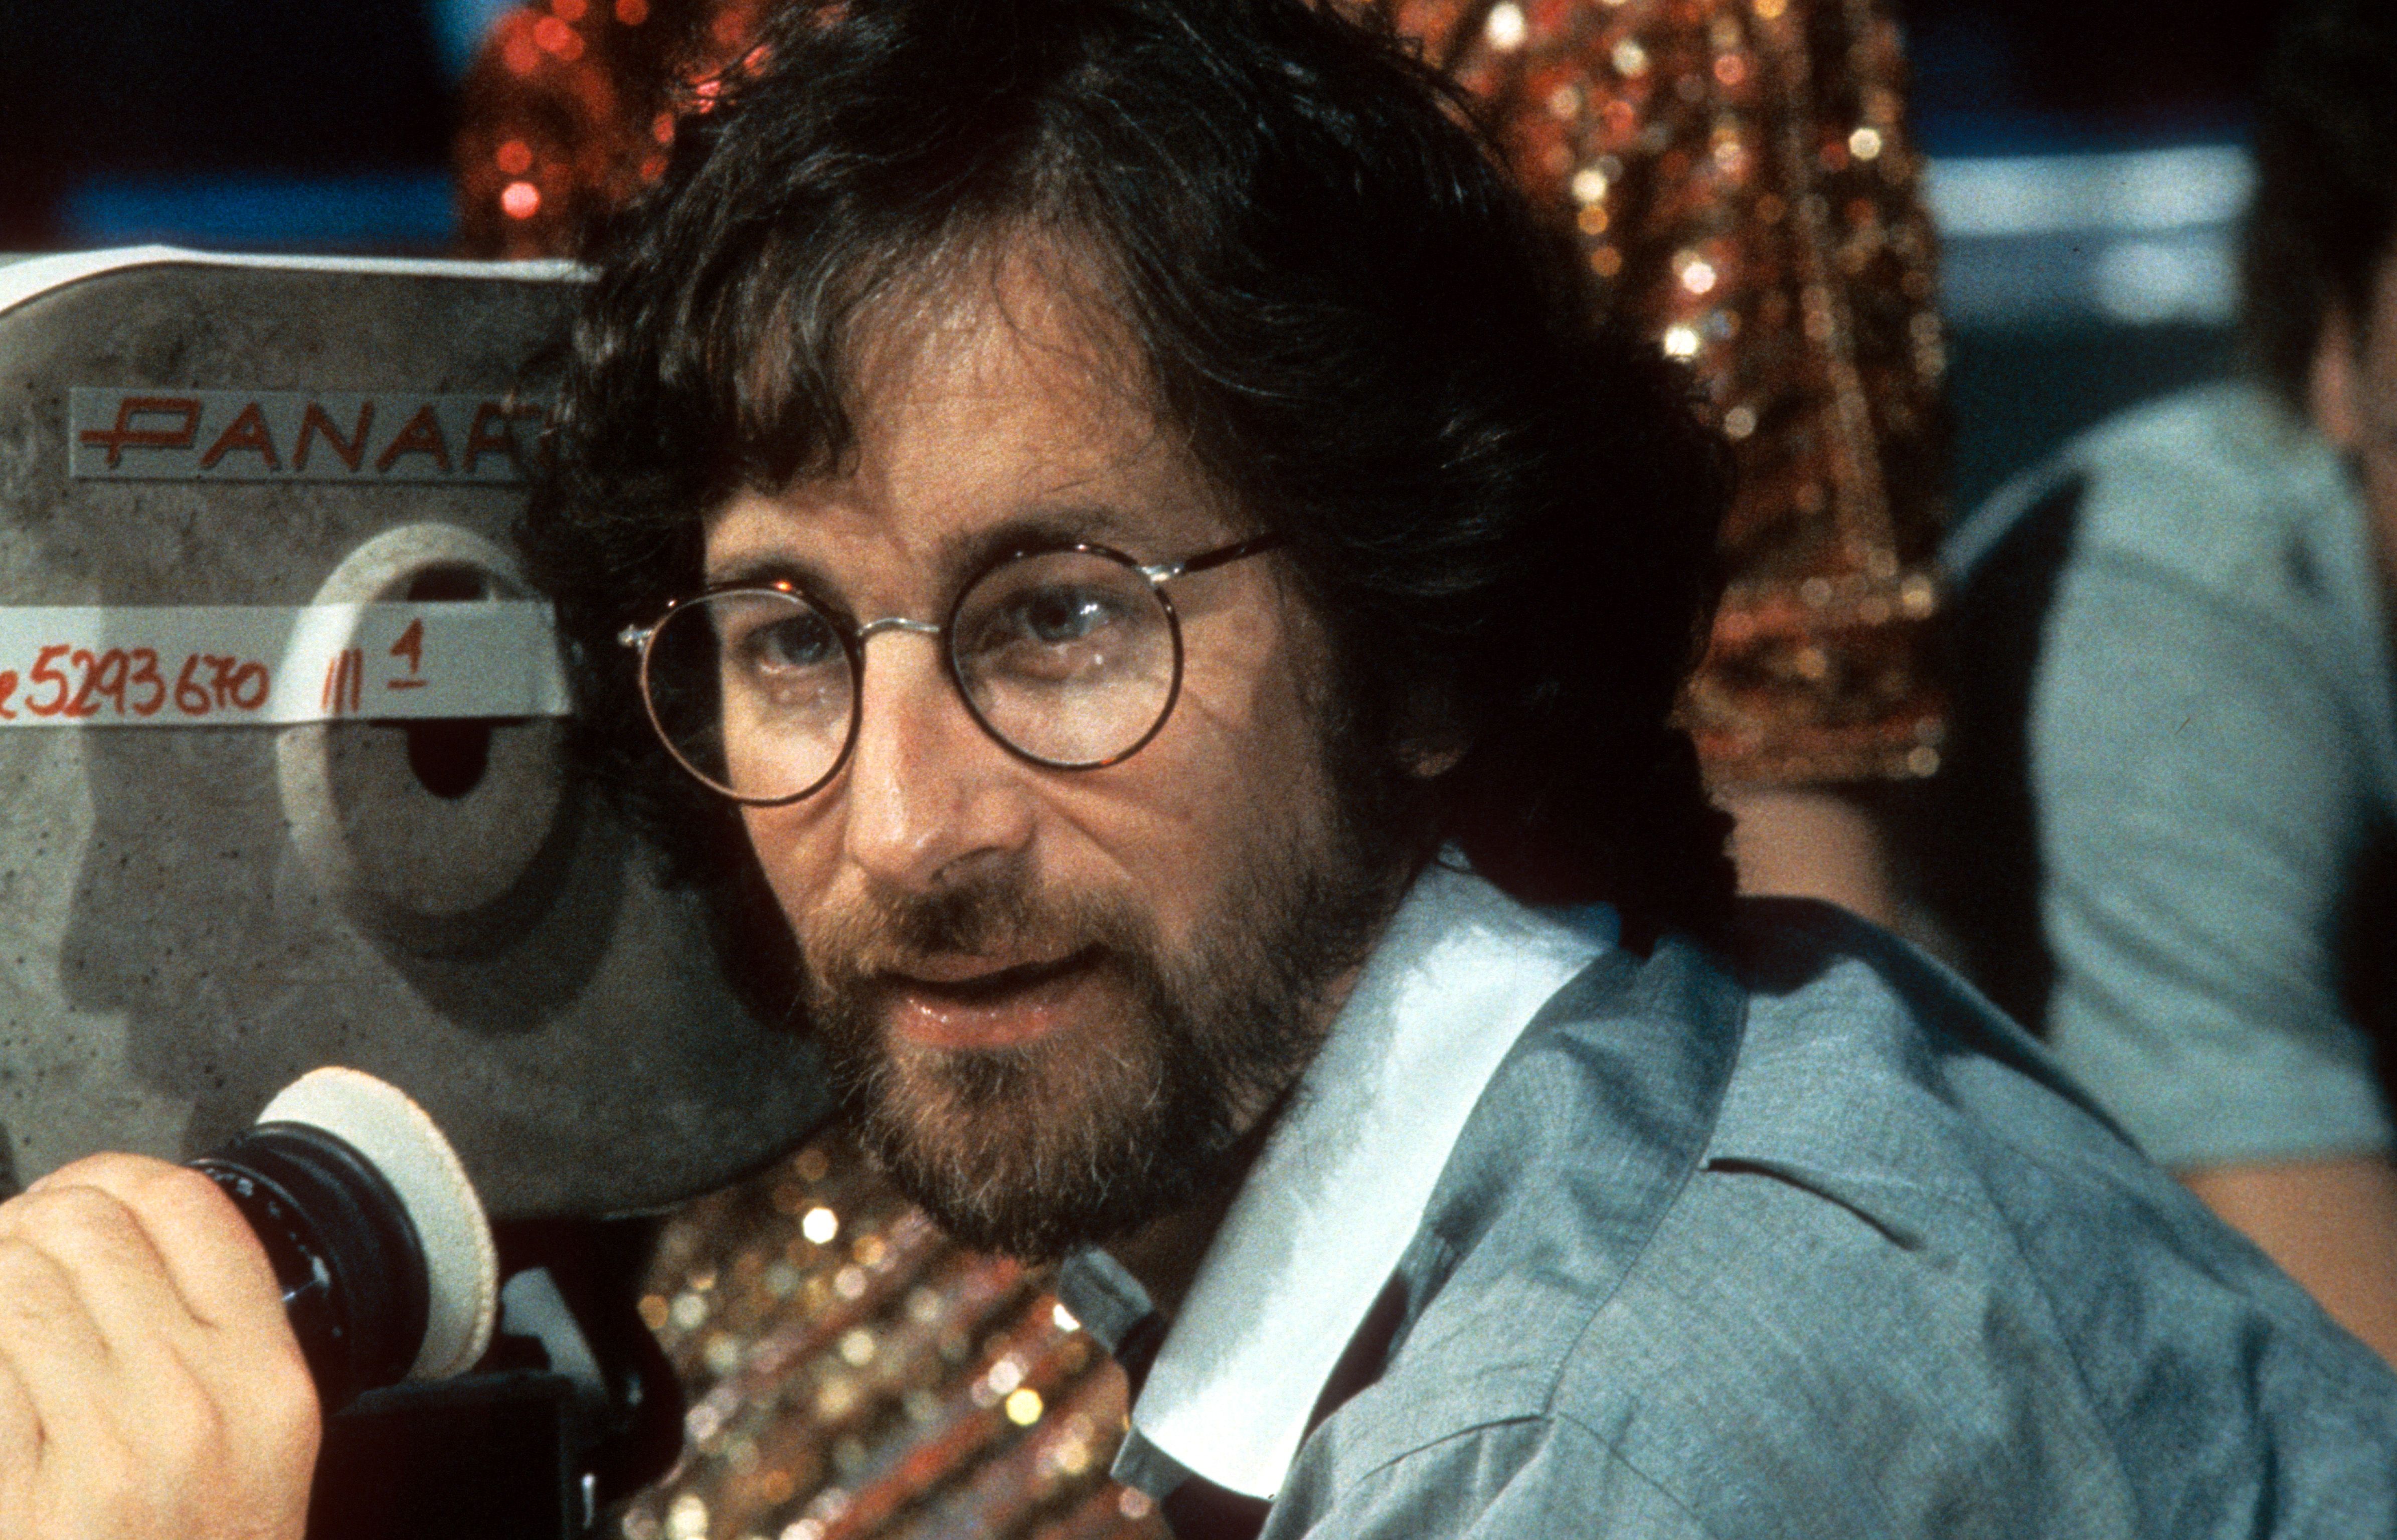 Curiosidades  'As Aventuras de Tintim', animação dirigida por Steven  Spielberg, completa dez anos! - CinePOP